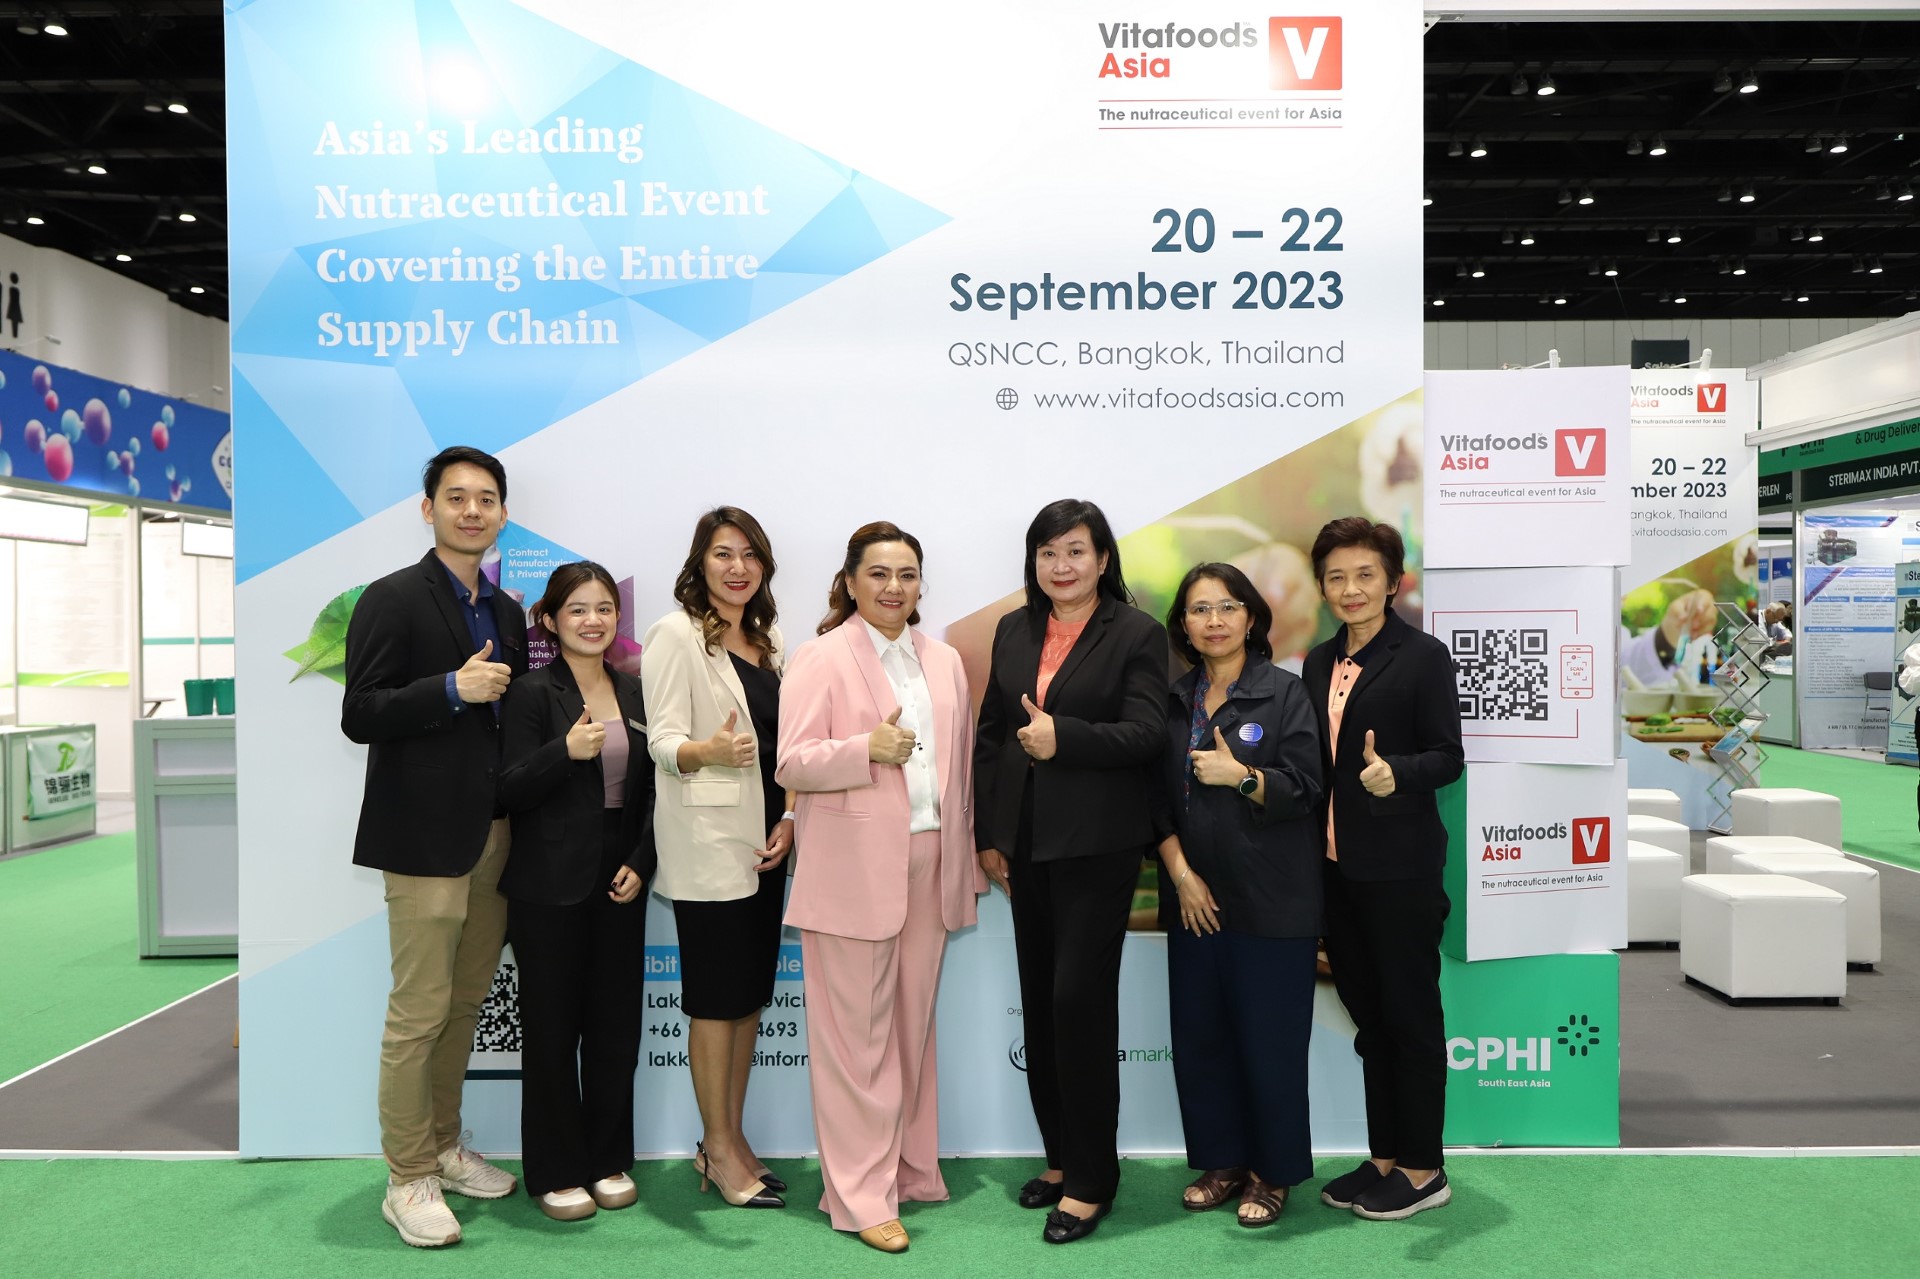 “อินฟอร์มา มาร์เก็ตส์ฯ จับมือ วว. จัดกิจกรรมการประกวดนวัตกรรมสารสกัดและผลิตภัณฑ์เสริมอาหาร “Vitafoods Asia Nutraceutical Awards”